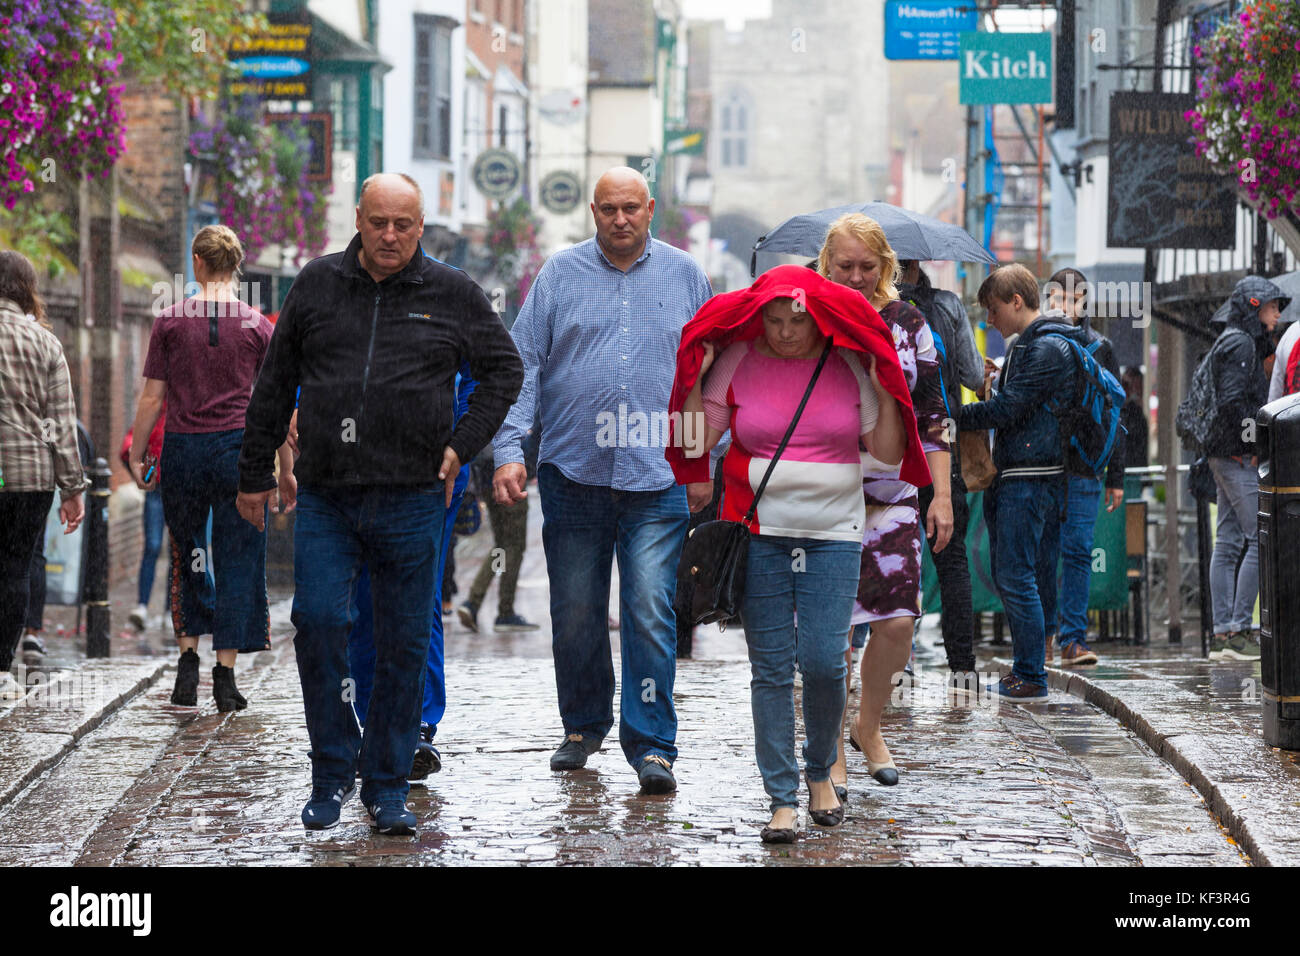 Canterbury, Kent, Großbritannien. 29. September 2017. Spaziergang Gruppe von Menschen, die rund um das Stadtzentrum, auf einer nassen und regnerischen Tag Großbritannien Regenguß durchnässt. Stockfoto